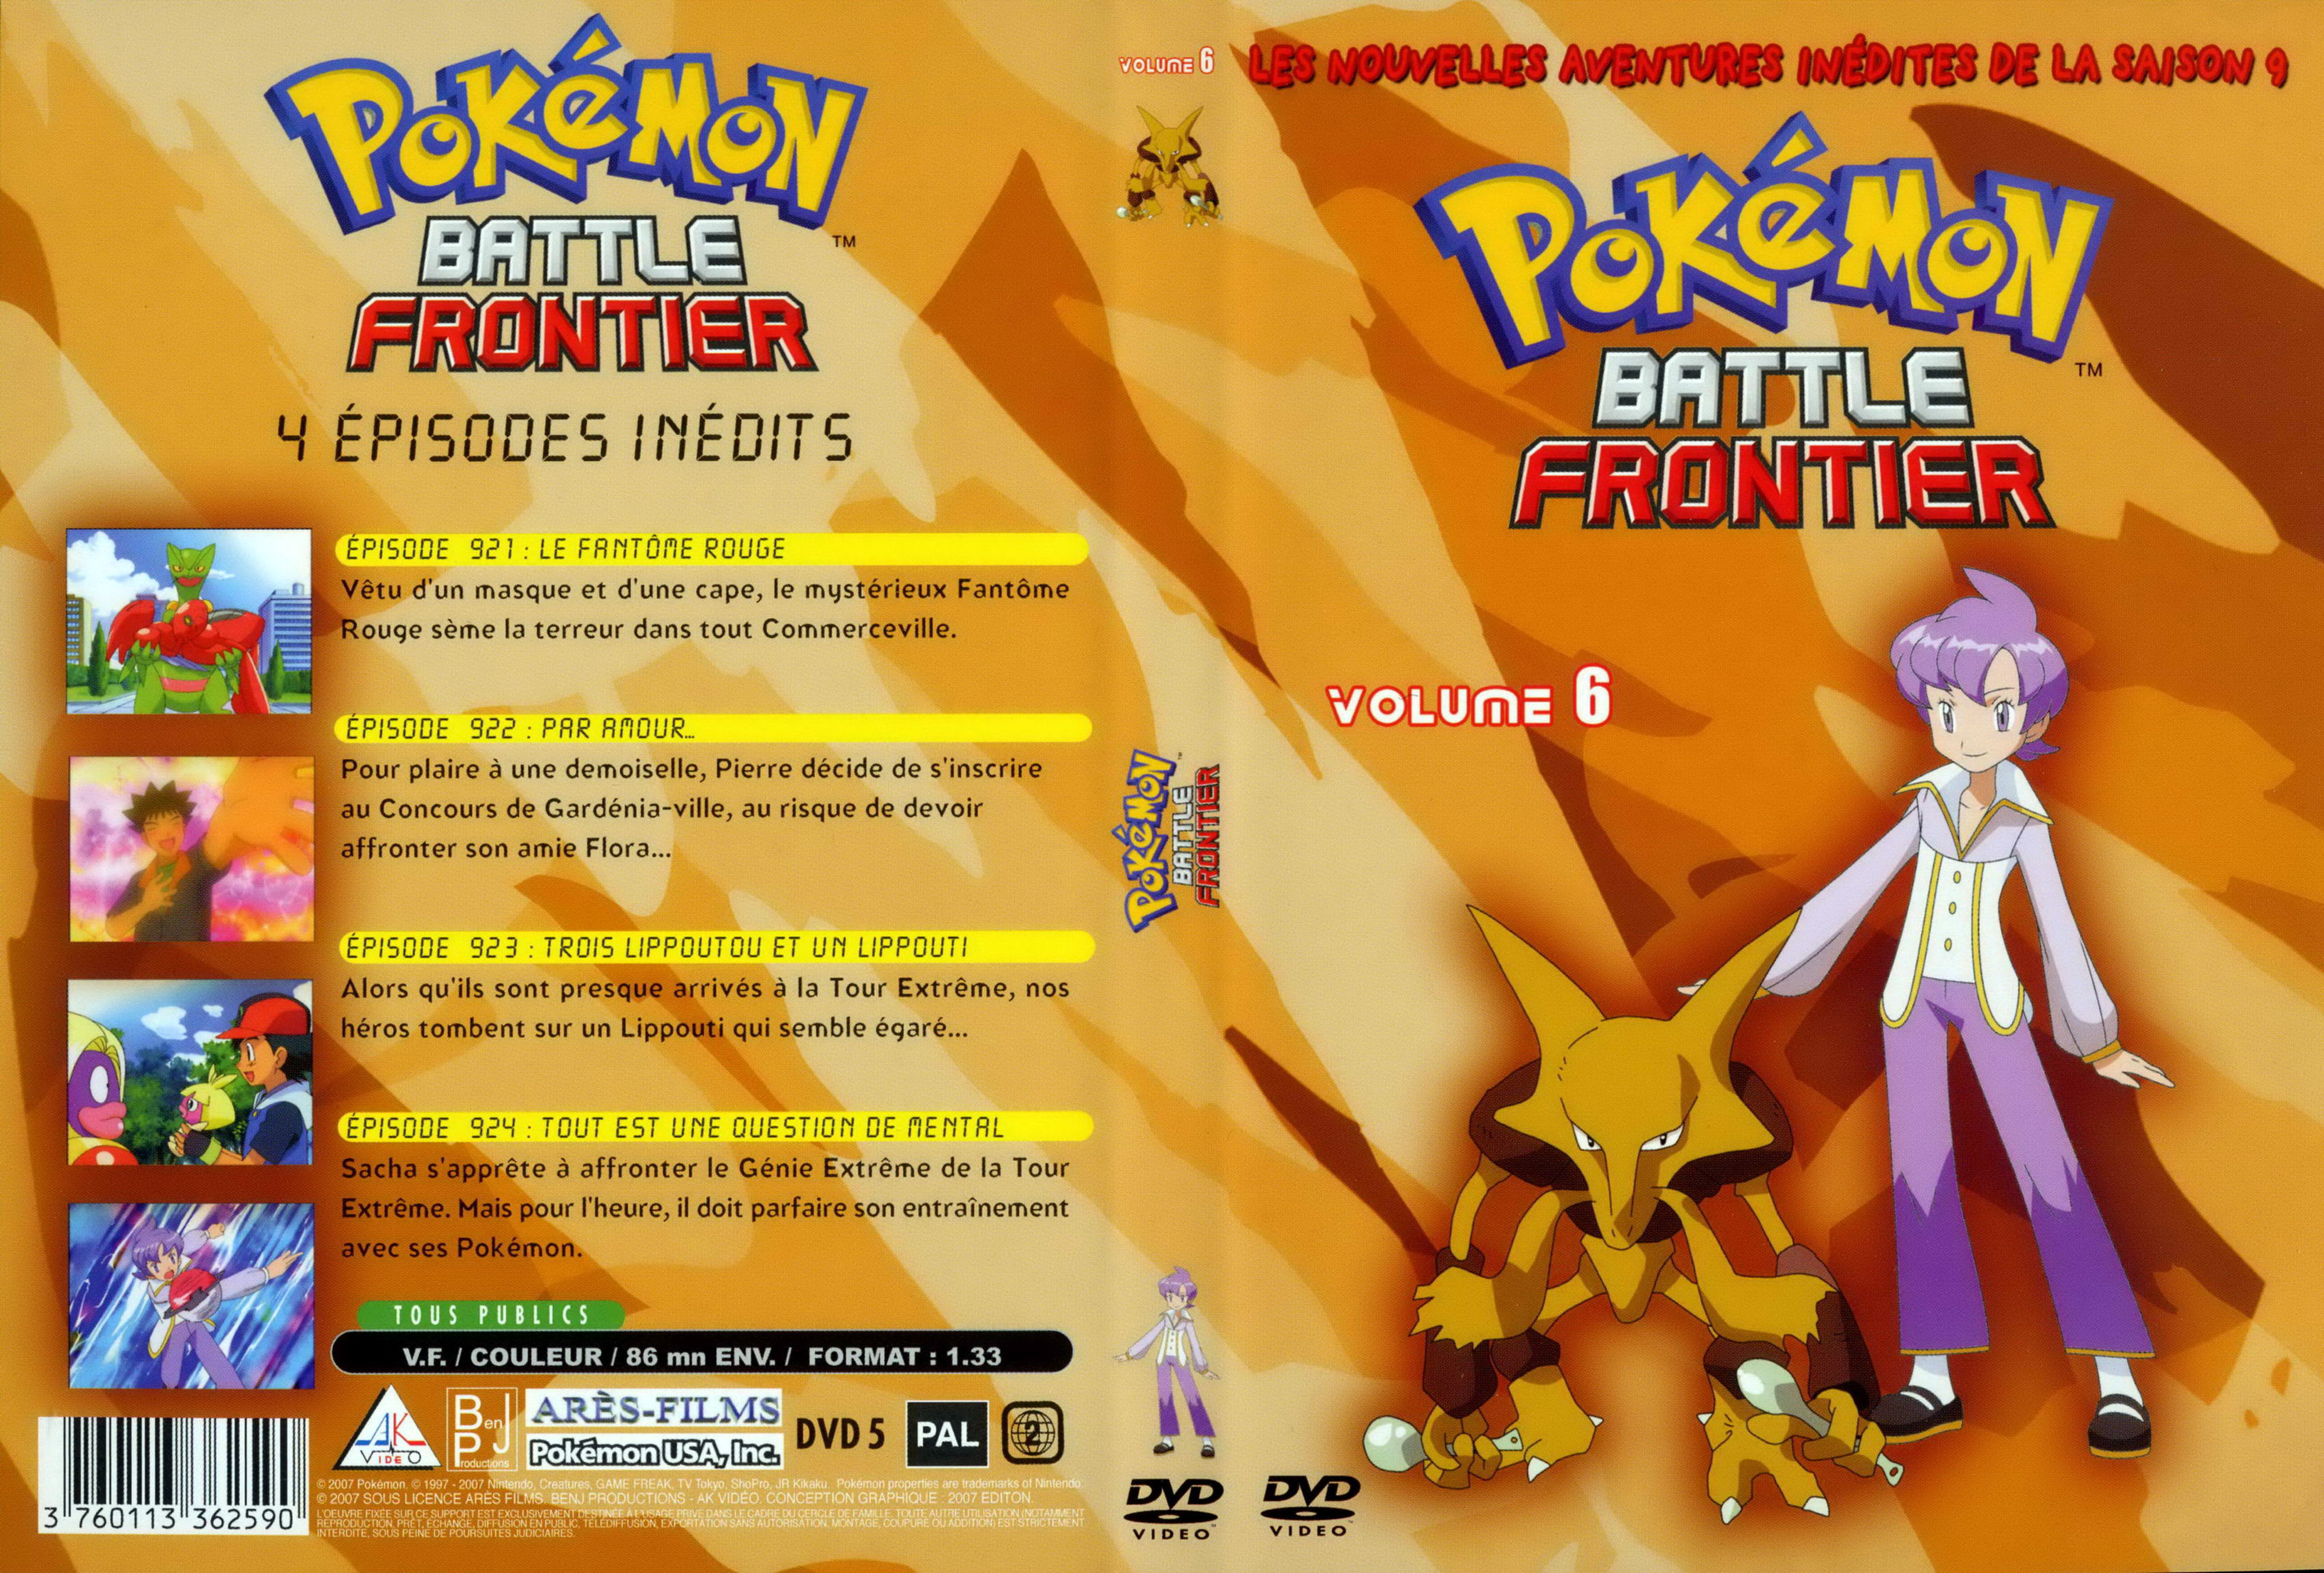 Jaquette DVD Pokemon battle frontier Saison 09 DVD 6